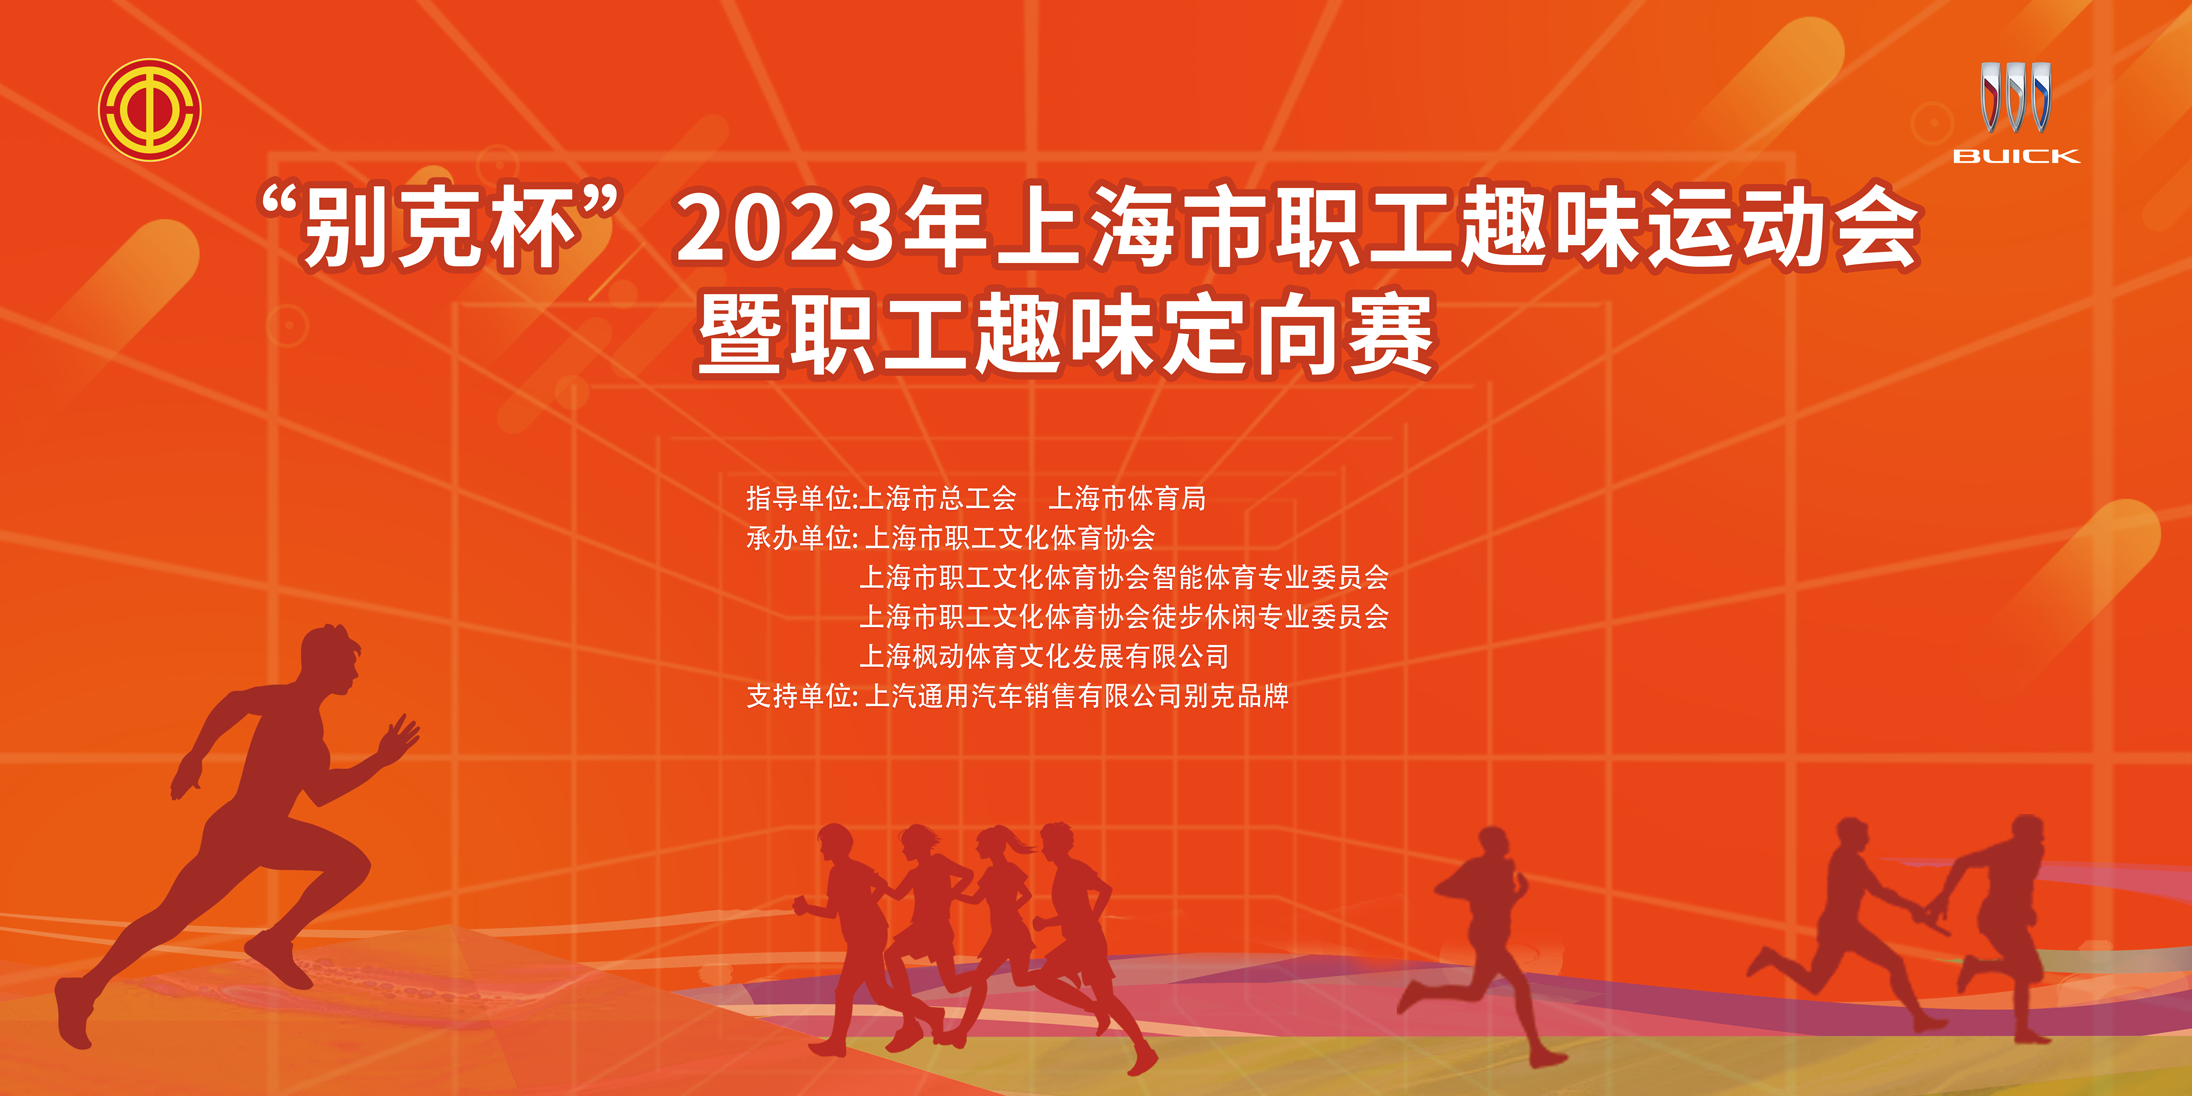 趣味定向赛|“别克杯”2023年上海市职工趣味运动会暨职工趣味定向赛顺利开赛！